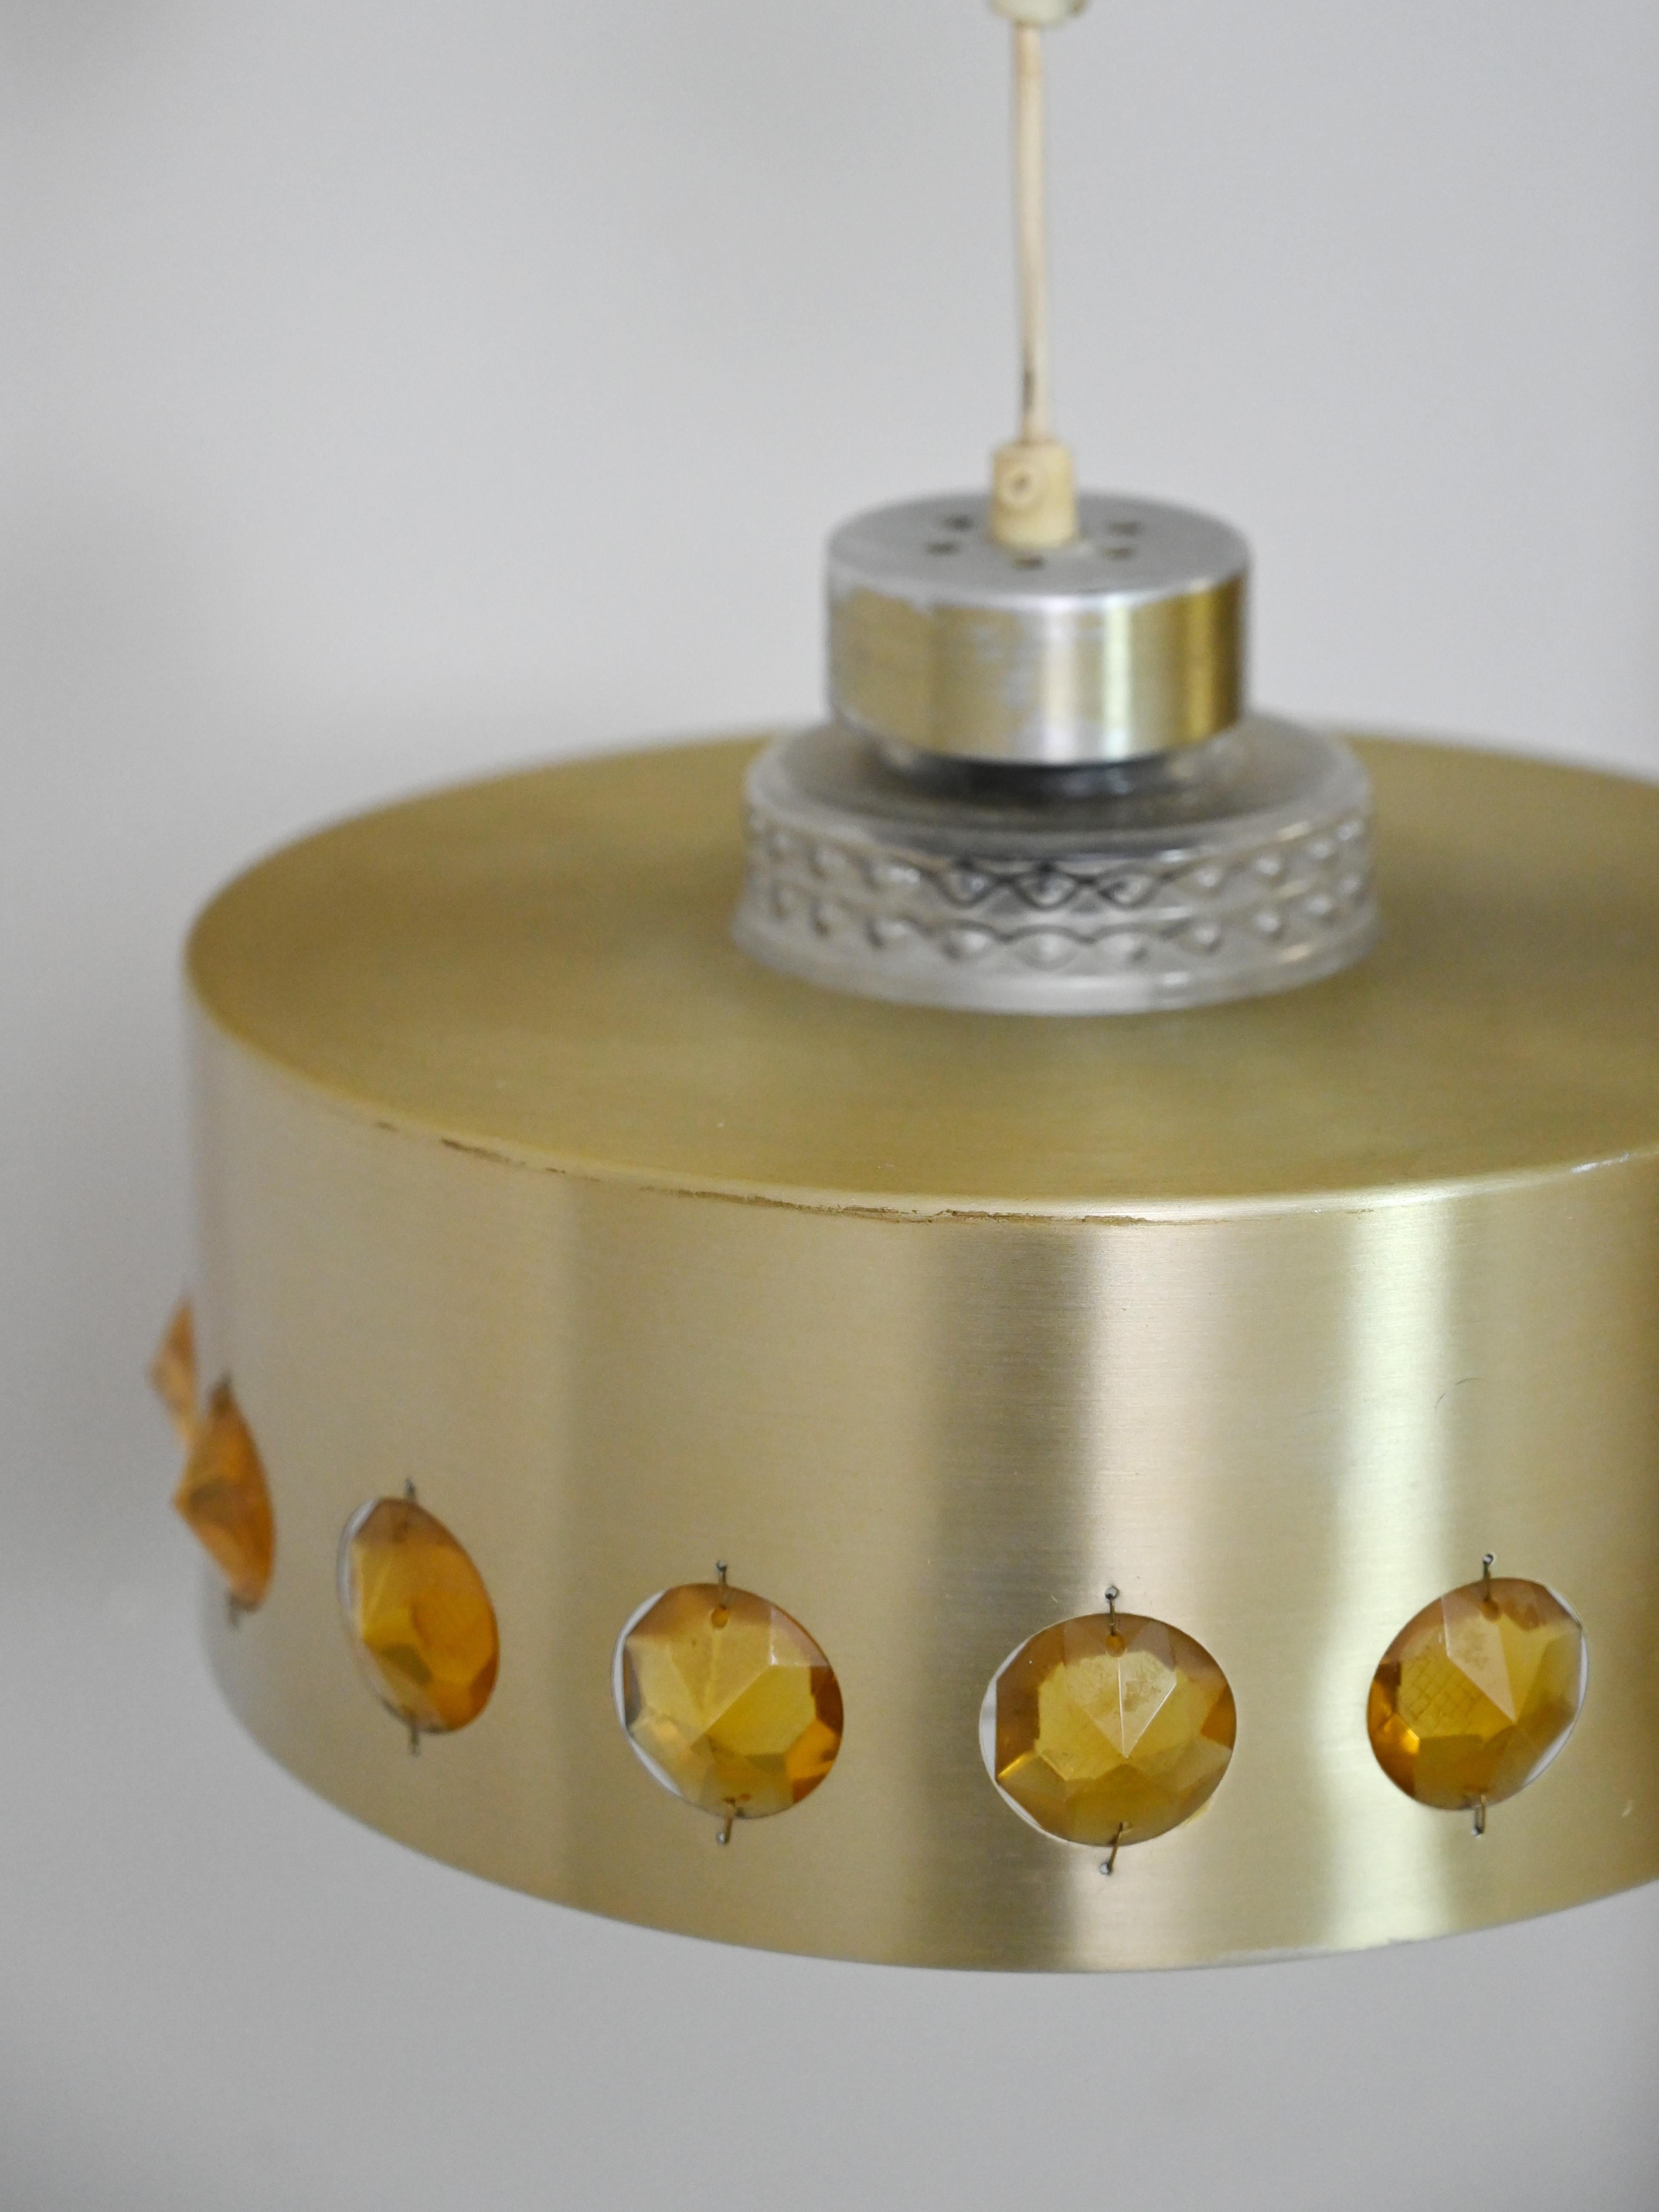 Original Vintage-Lampe aus den 1960er Jahren.

Eine einzigartige Retro-Lampe, die aus zwei Teilen besteht.

Der innere Lampenschirm ist aus Kristall, der äußere aus goldenem Metall mit eingebetteten bernsteinfarbenen Kunststeinen.

Es ist ein